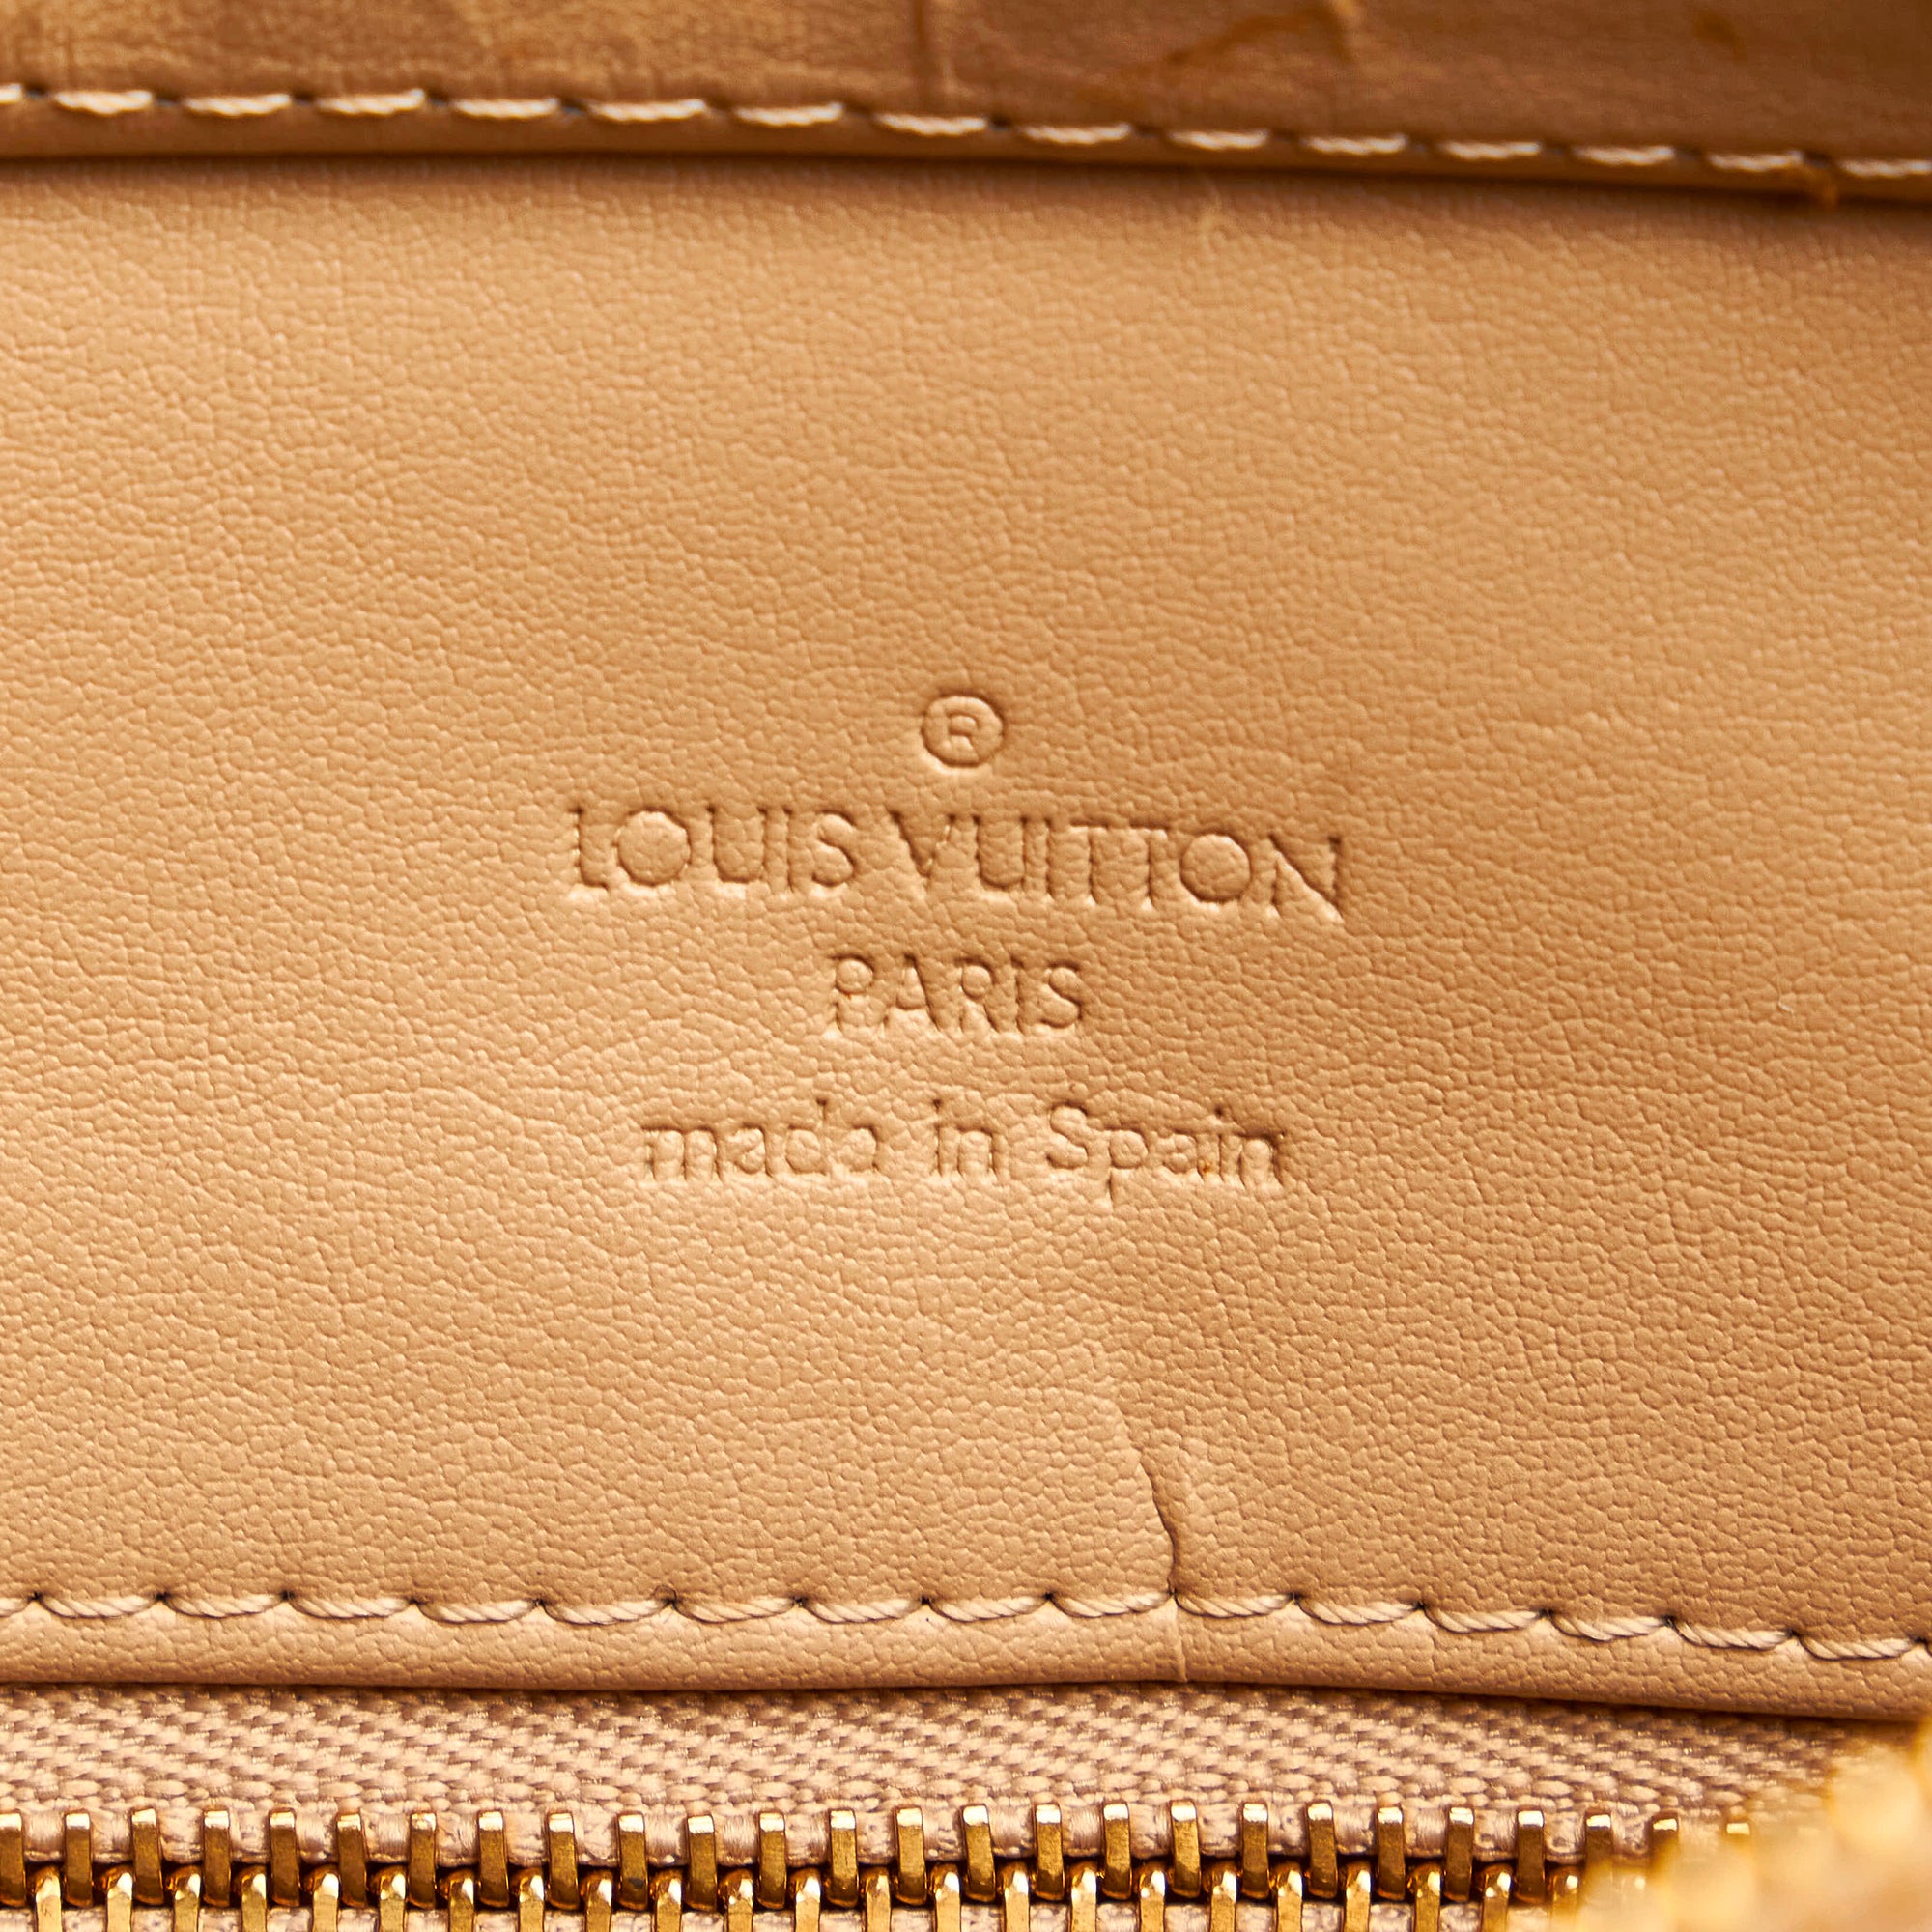 Vintage Louis Vuitton Houston Vernis Yellow Monogram Tote LW1919 032823